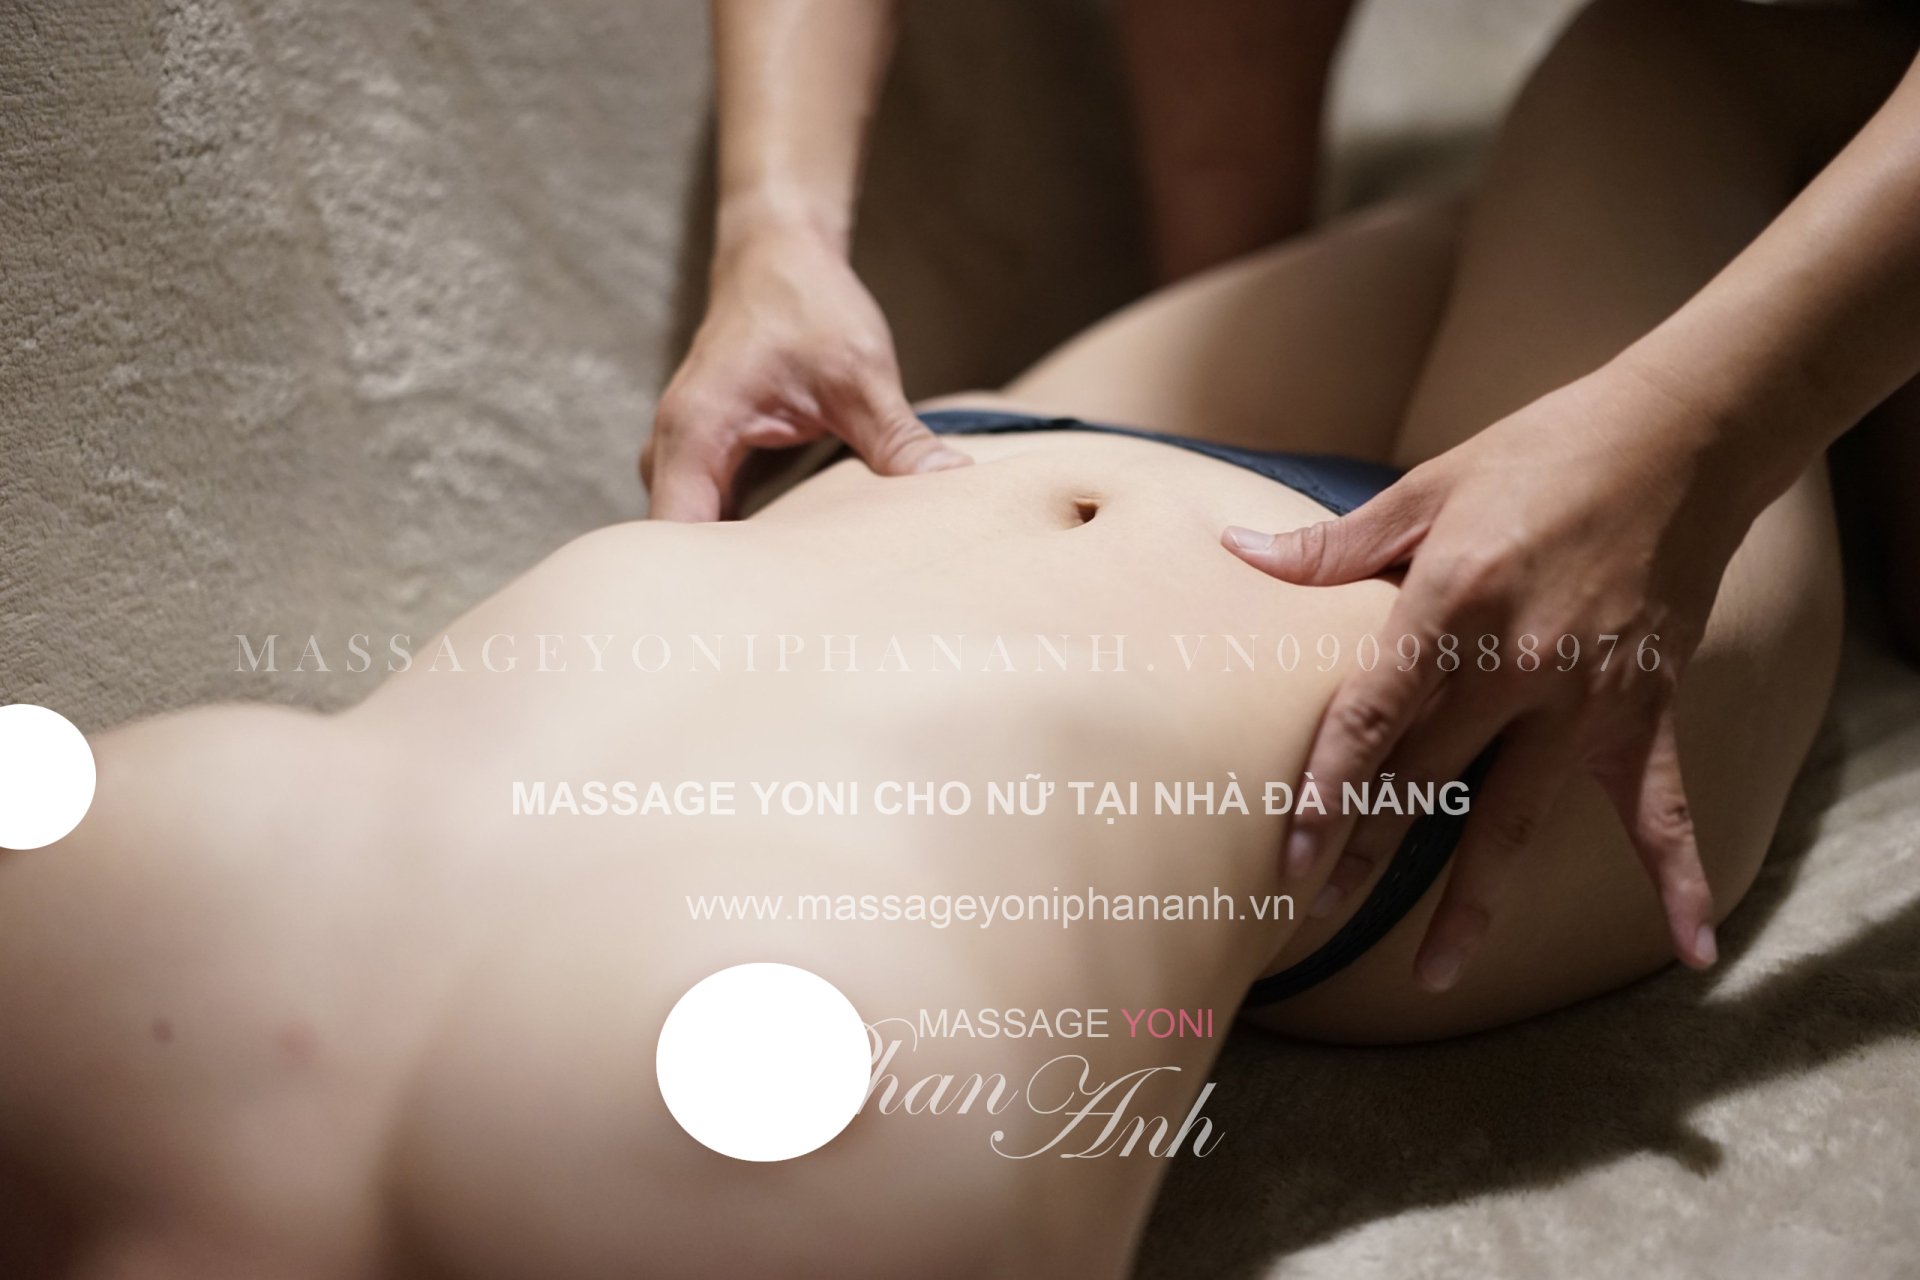 massage yoni tại nhà cho nữ ở Đà Nẵng